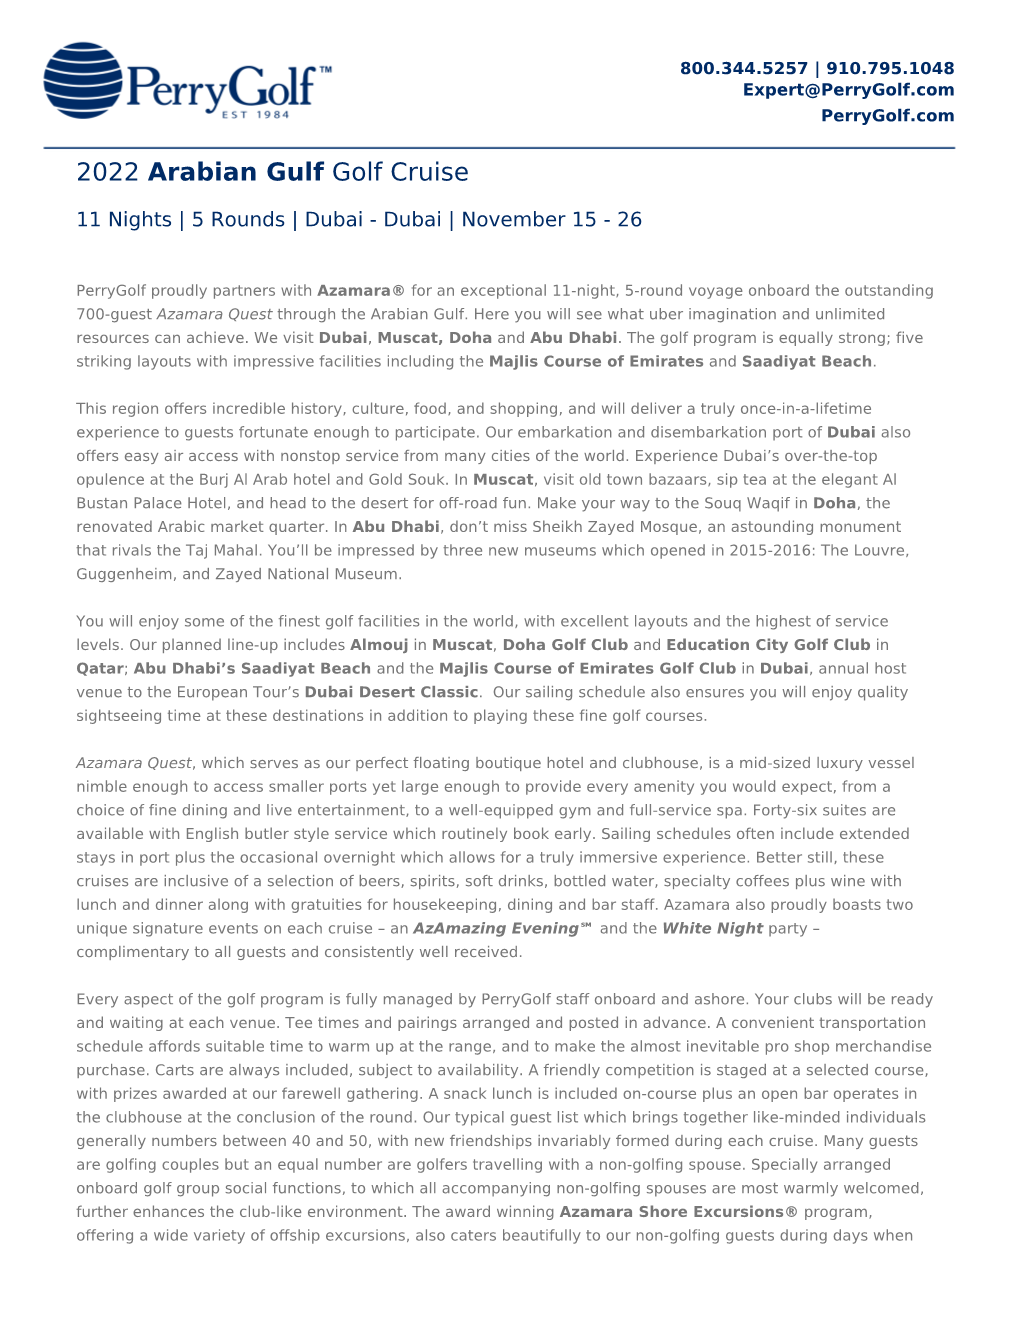 2022 Arabian Gulf Golf Cruise